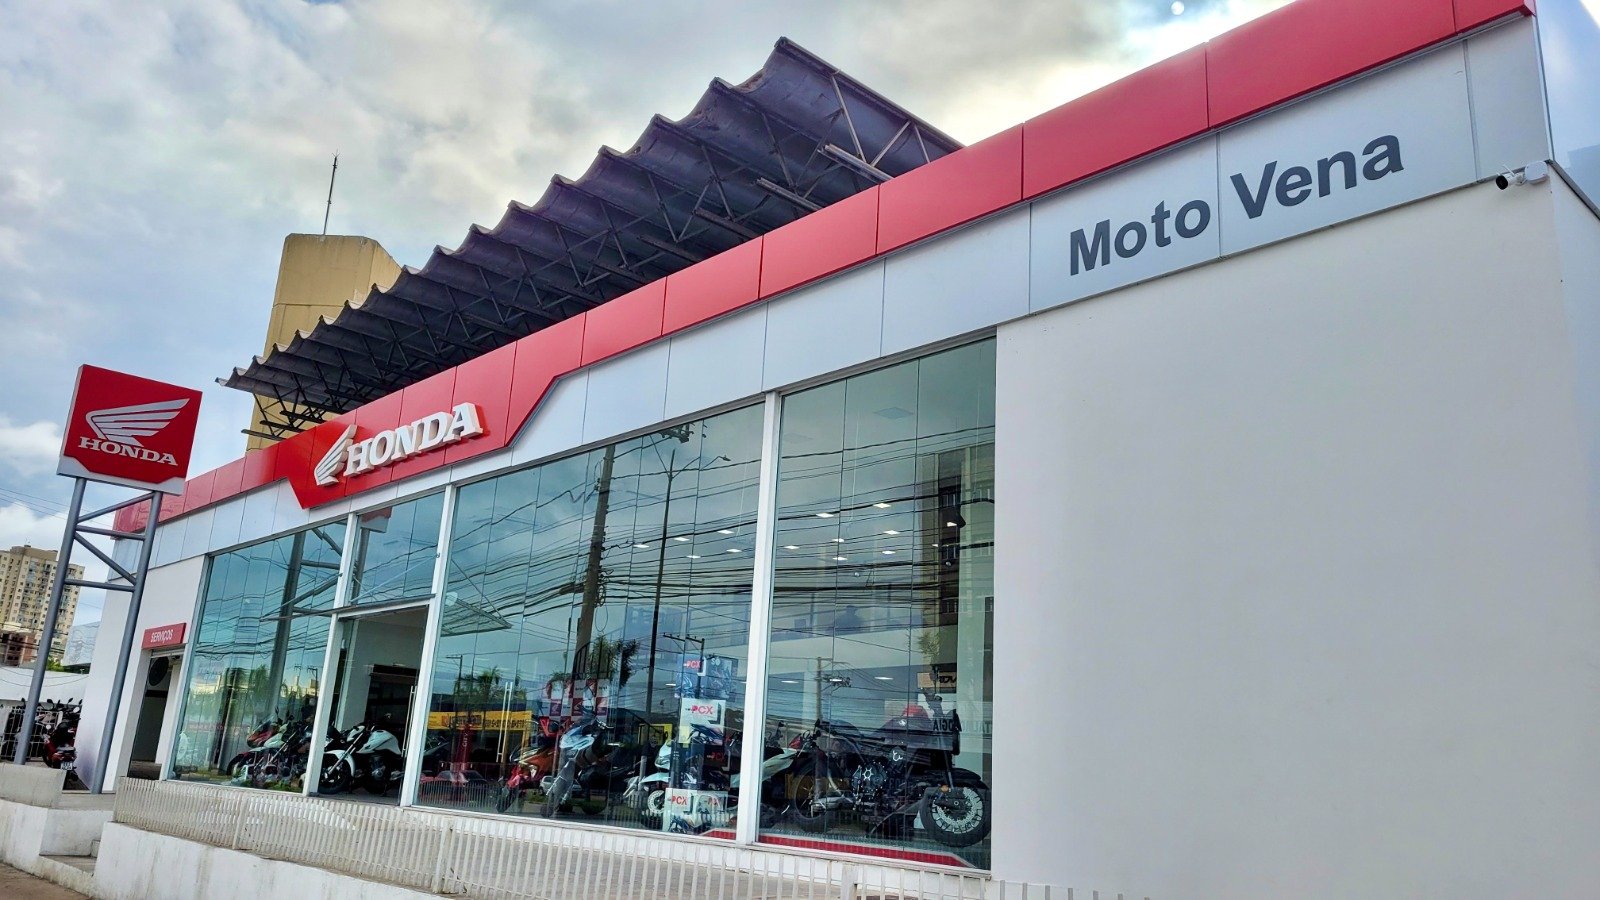 Revendedora autorizada da Honda no Estado, a Moto Vena aproveita o aquecimento do mercado. Venda de quadriciclos também está no radar